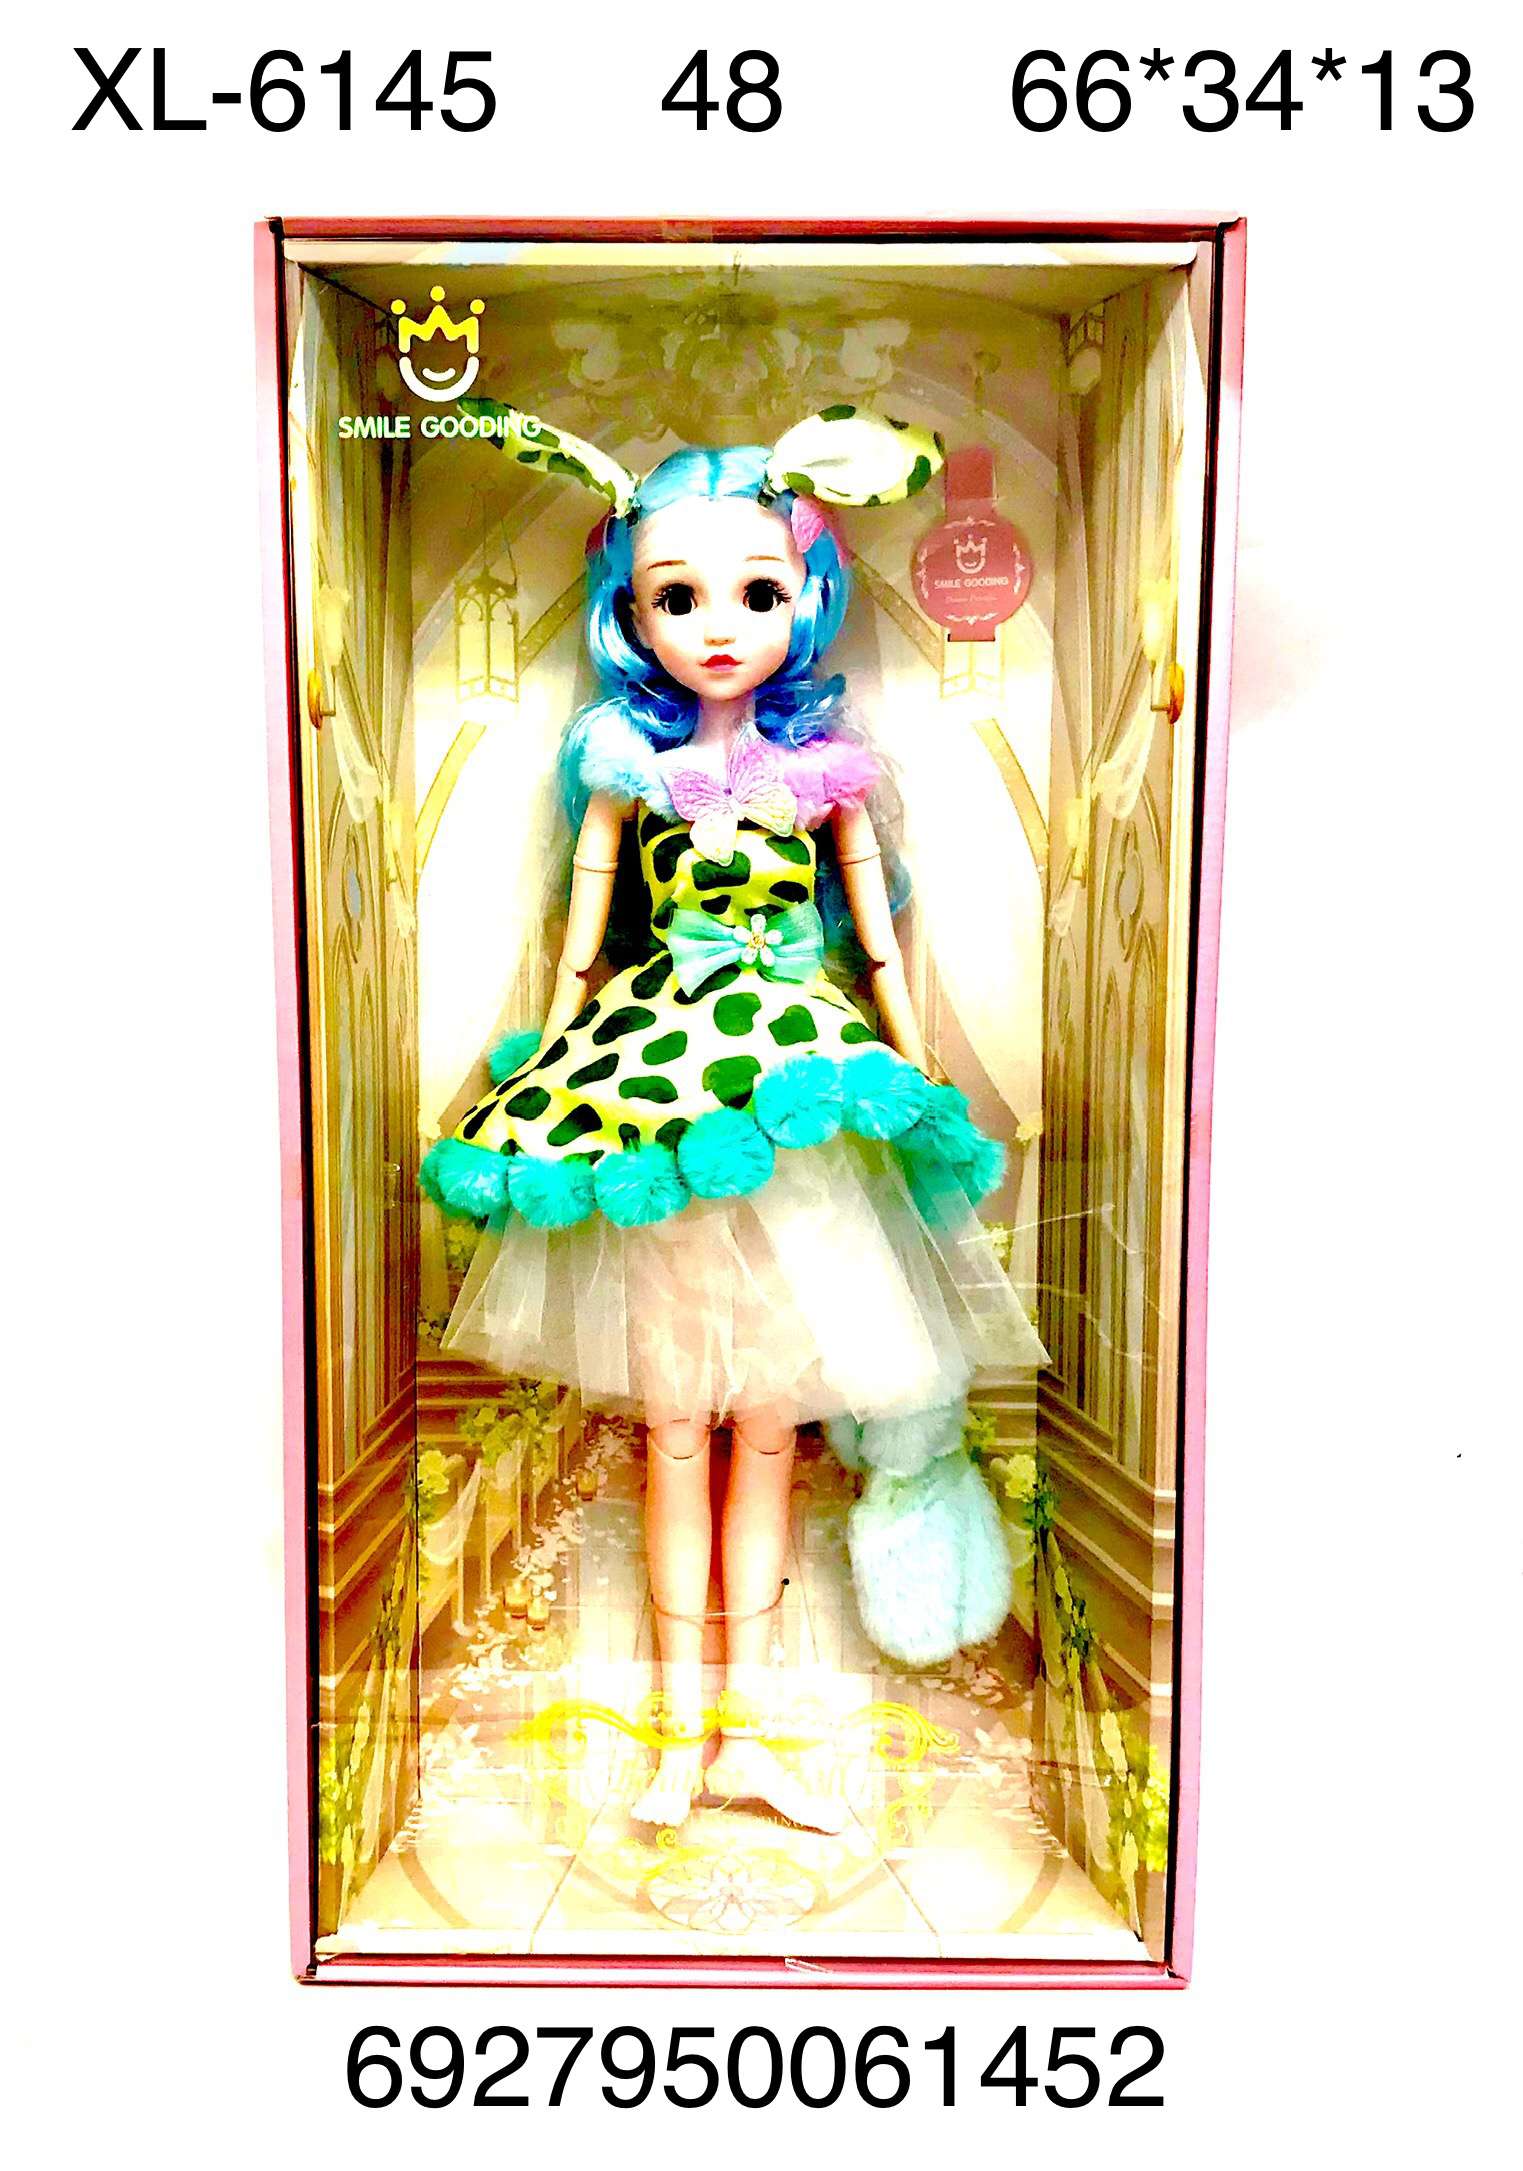 Кукла XL-6145 Smile